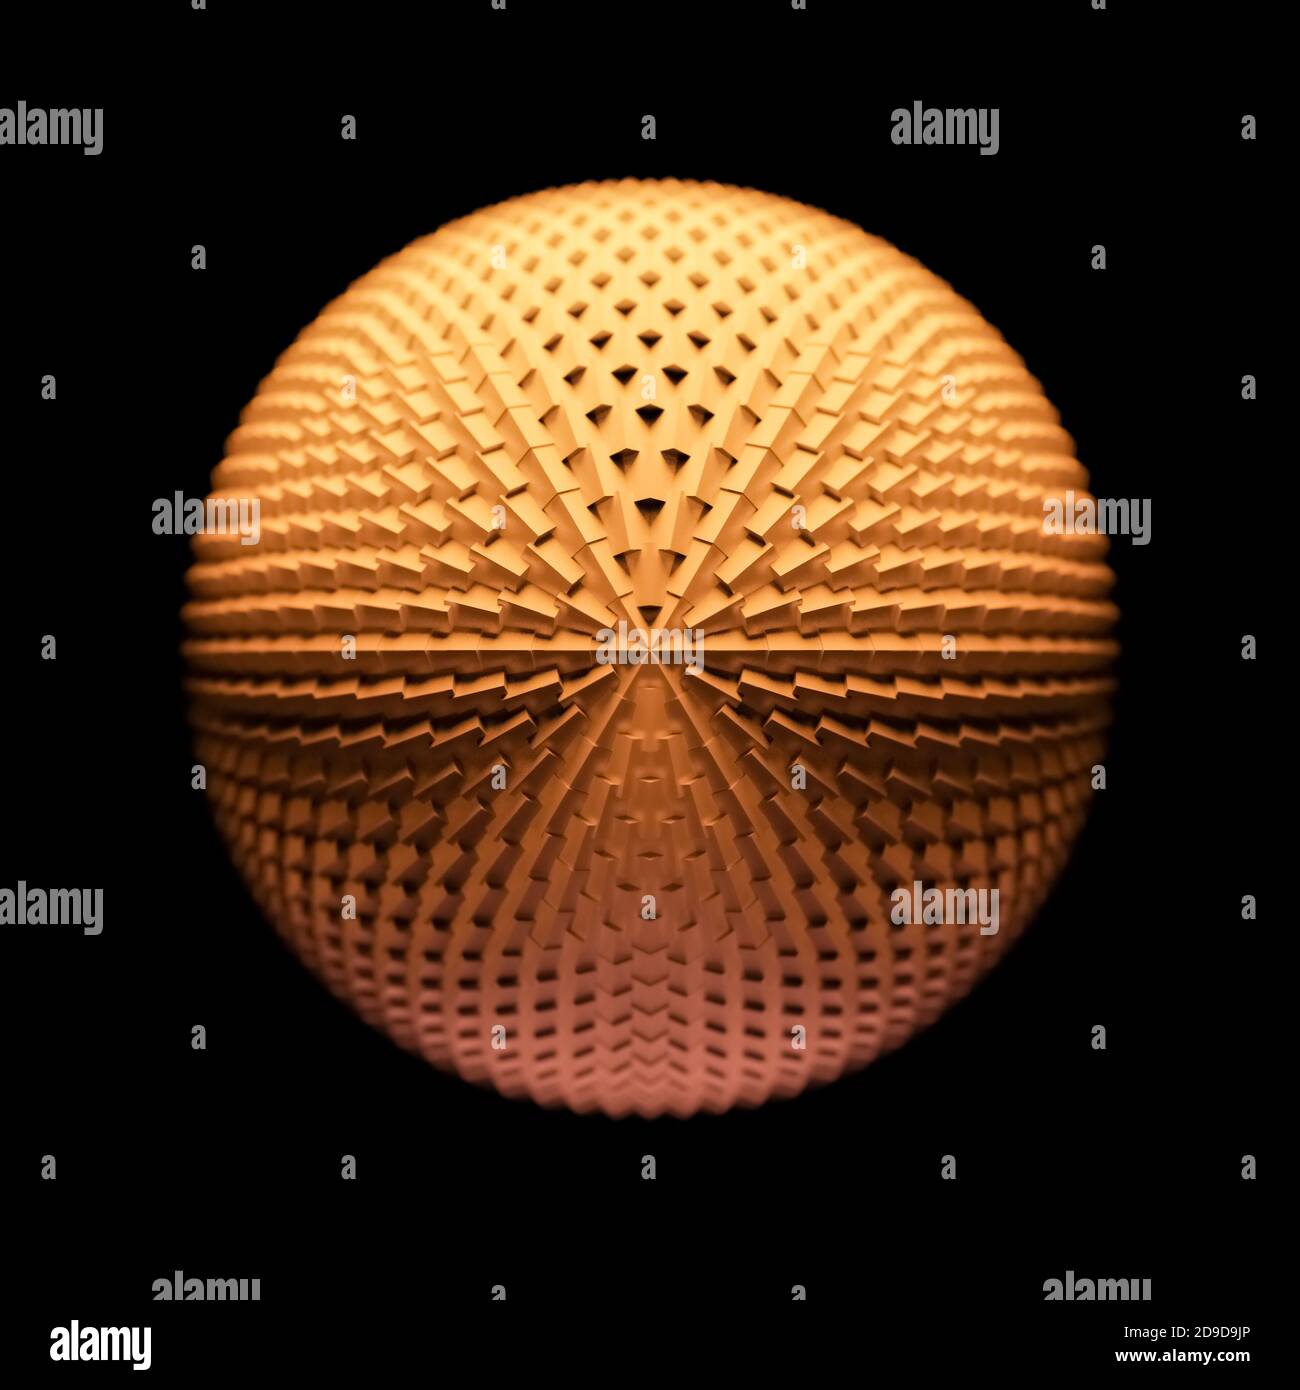 Sfondo astratto, sfera o sfera con forme simmetriche di cubo rotondo, bordi, texture di edgy, motivo angolare o texture, illustrazione 3D, cgi Foto Stock